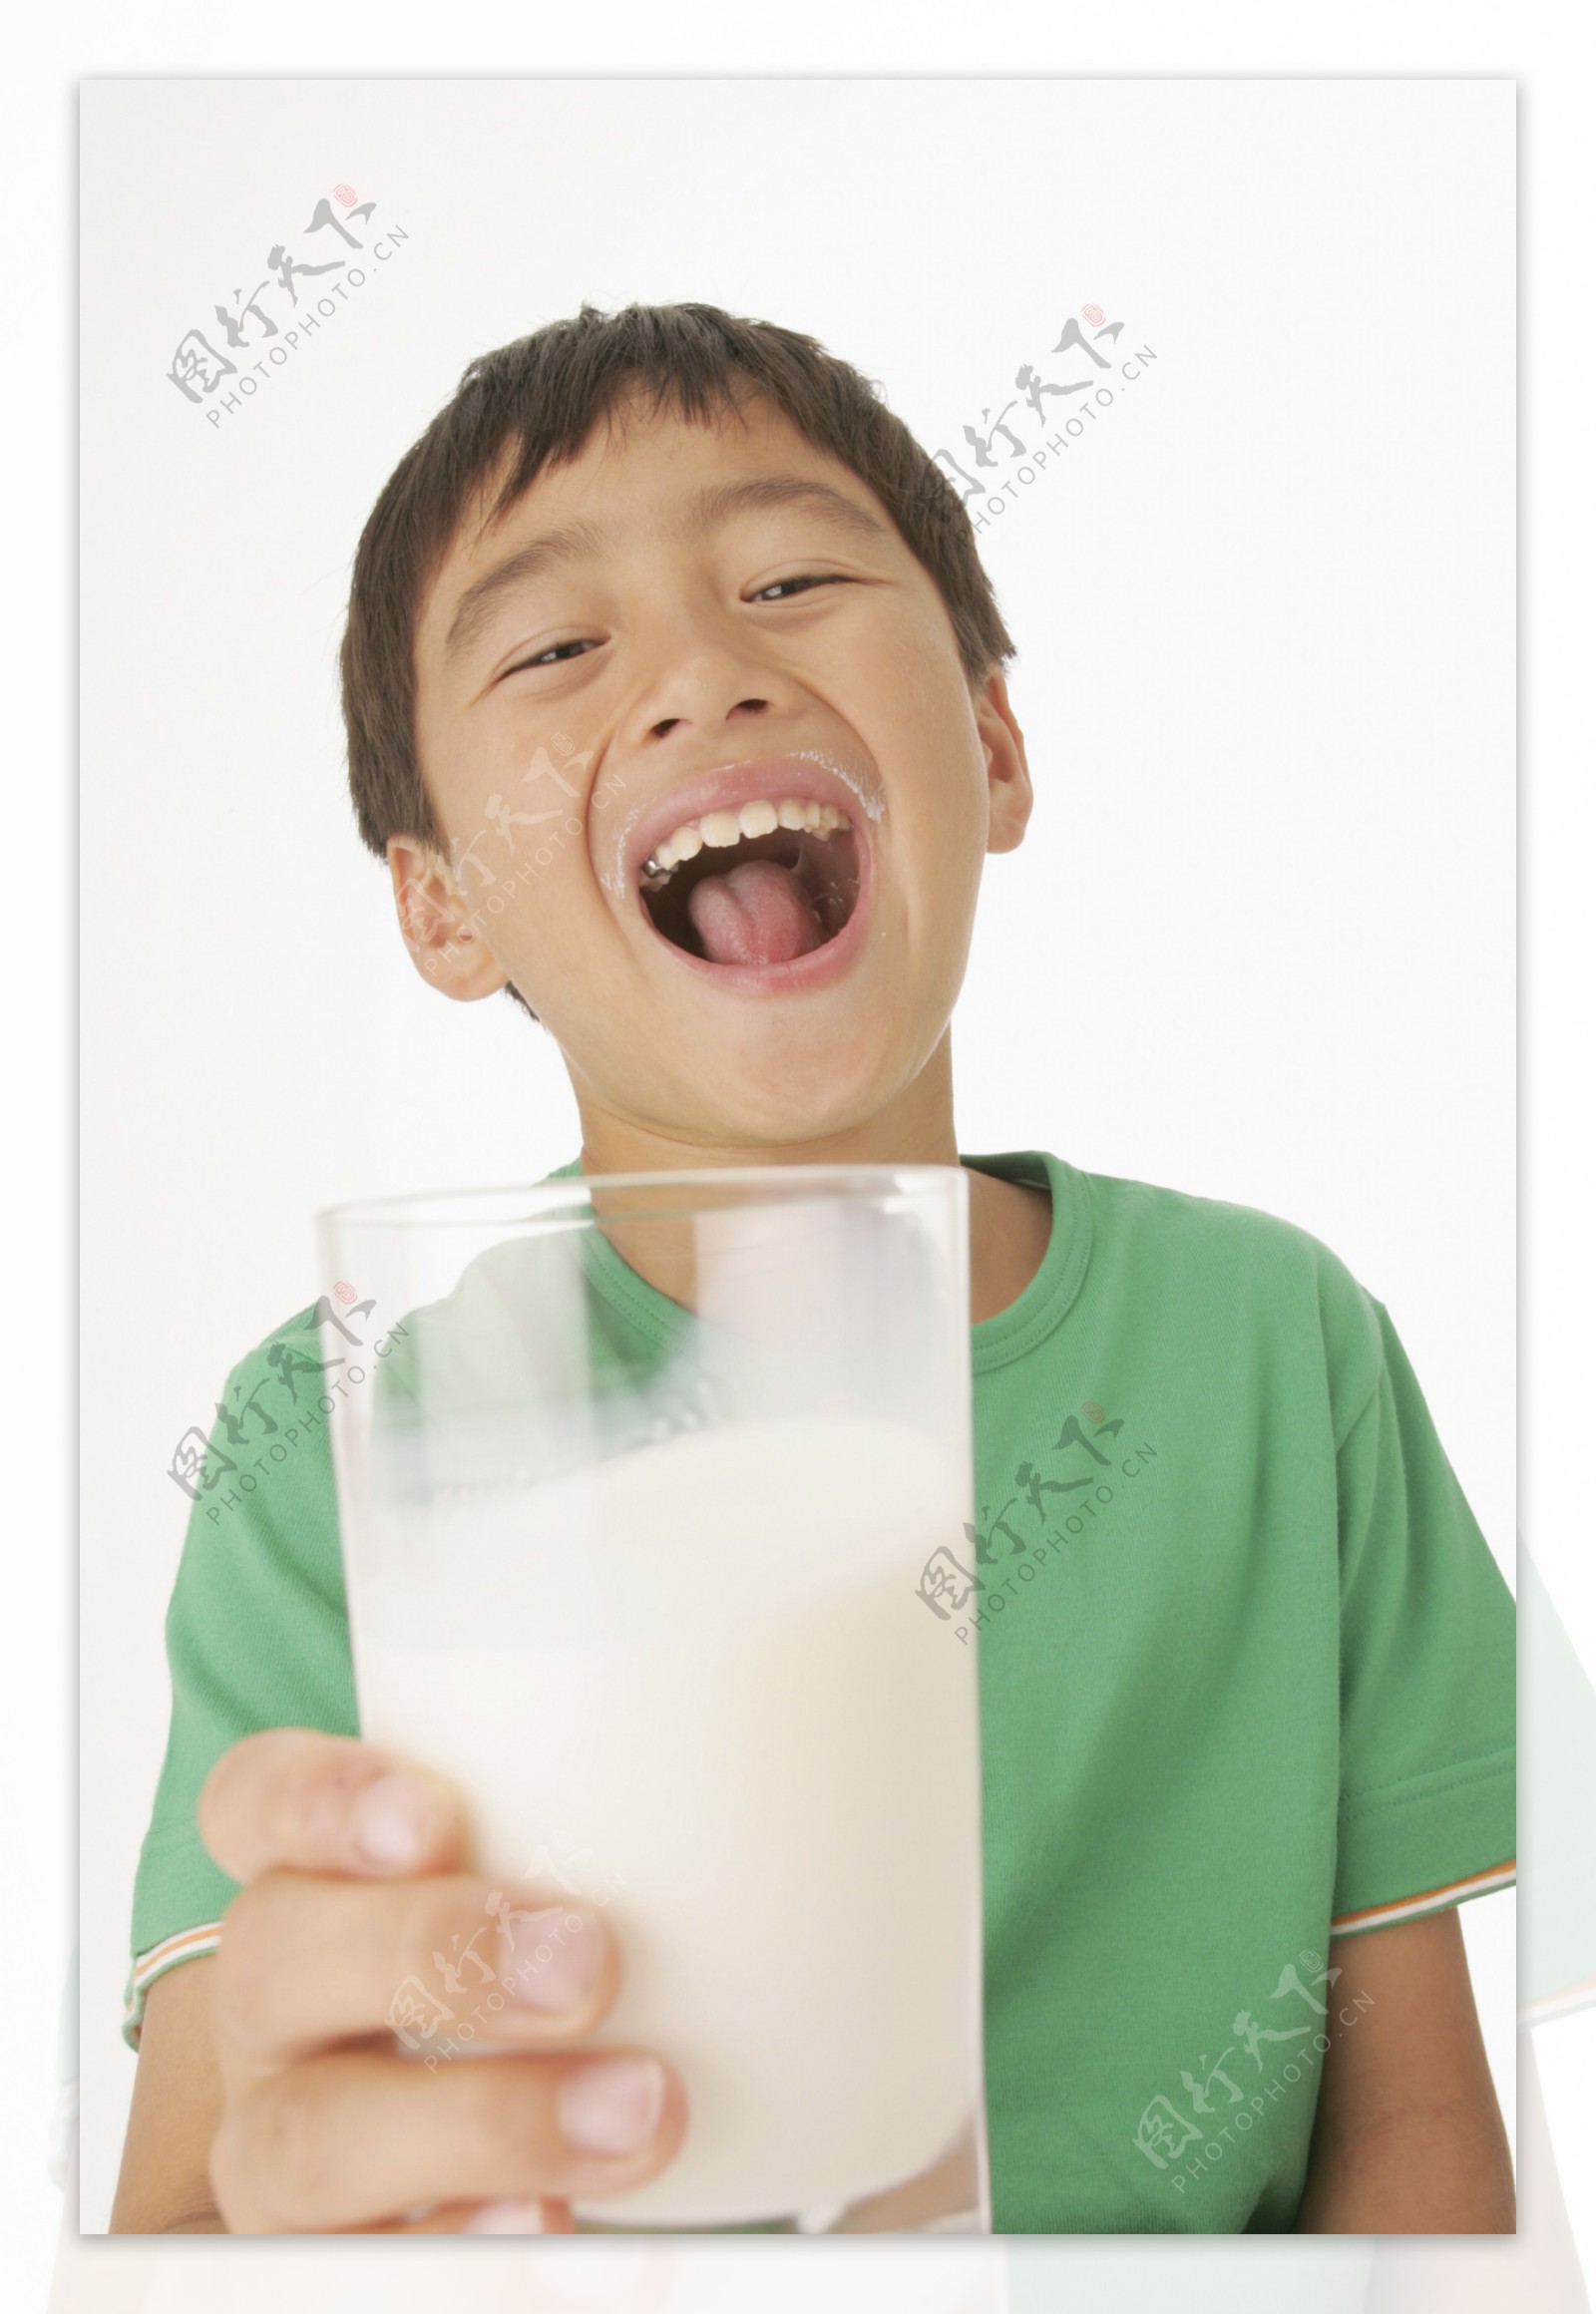 喝牛奶的儿童图片